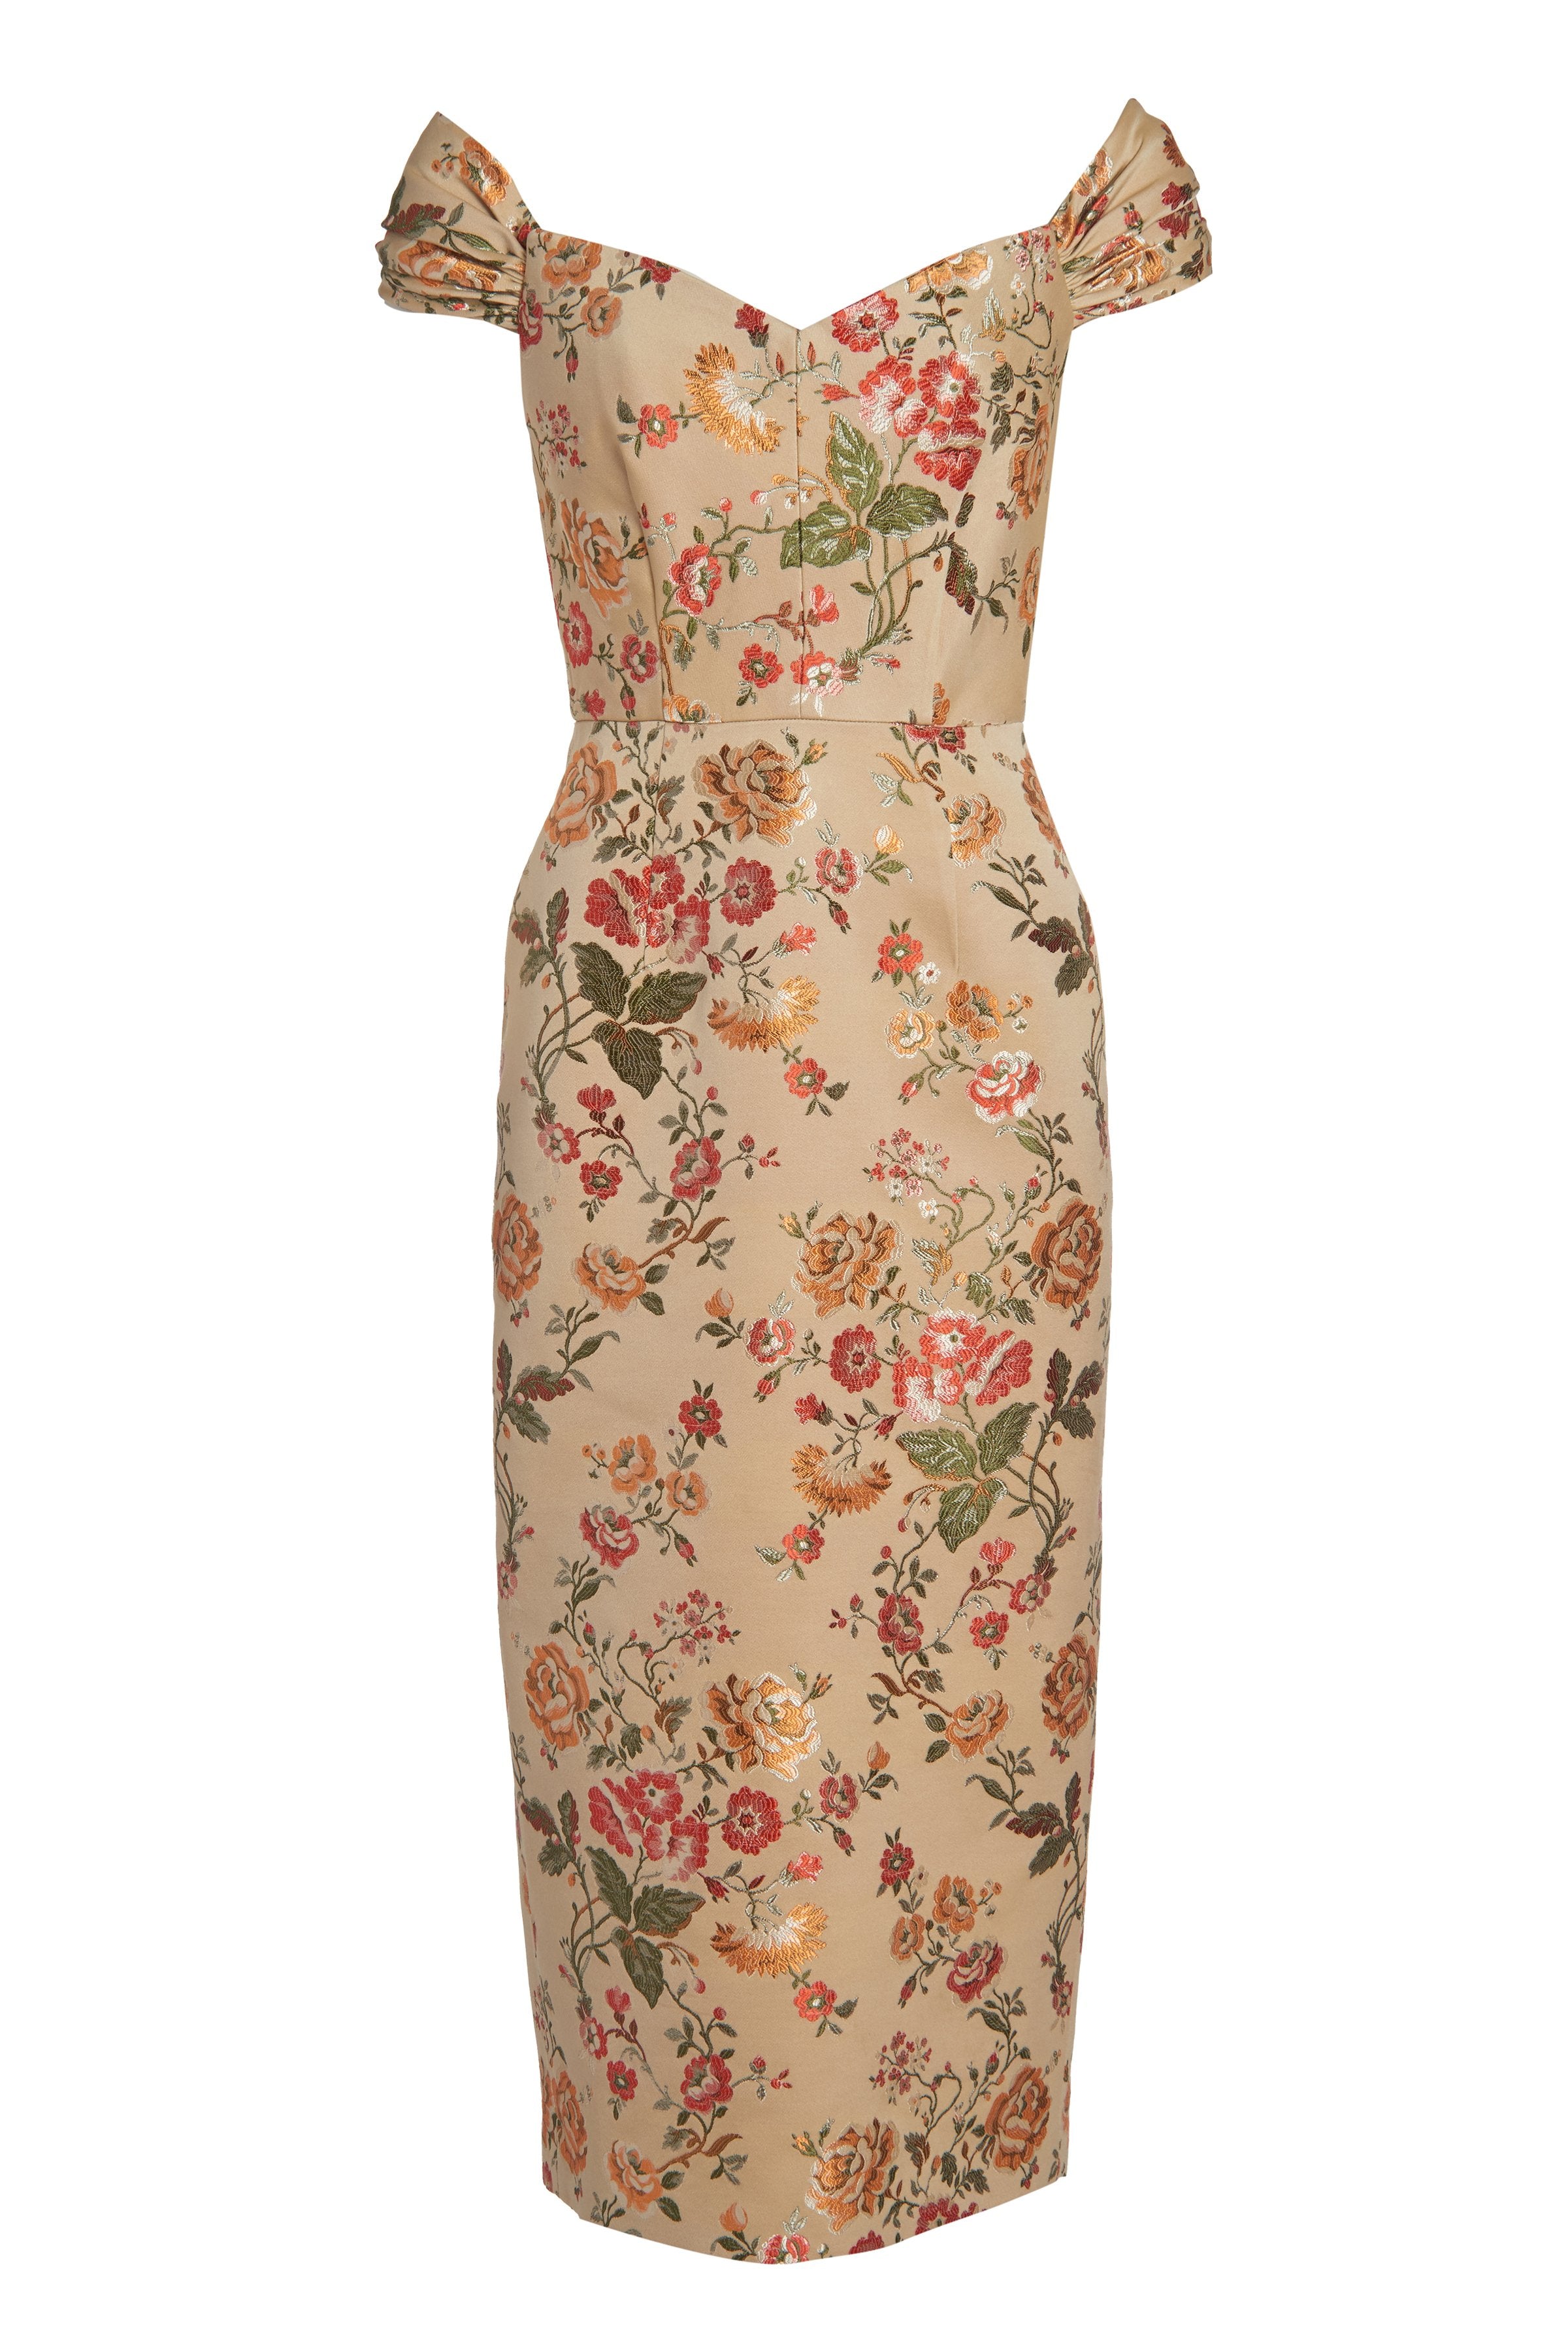 Vintage Floral Draped Corset Dress - XS / Floral